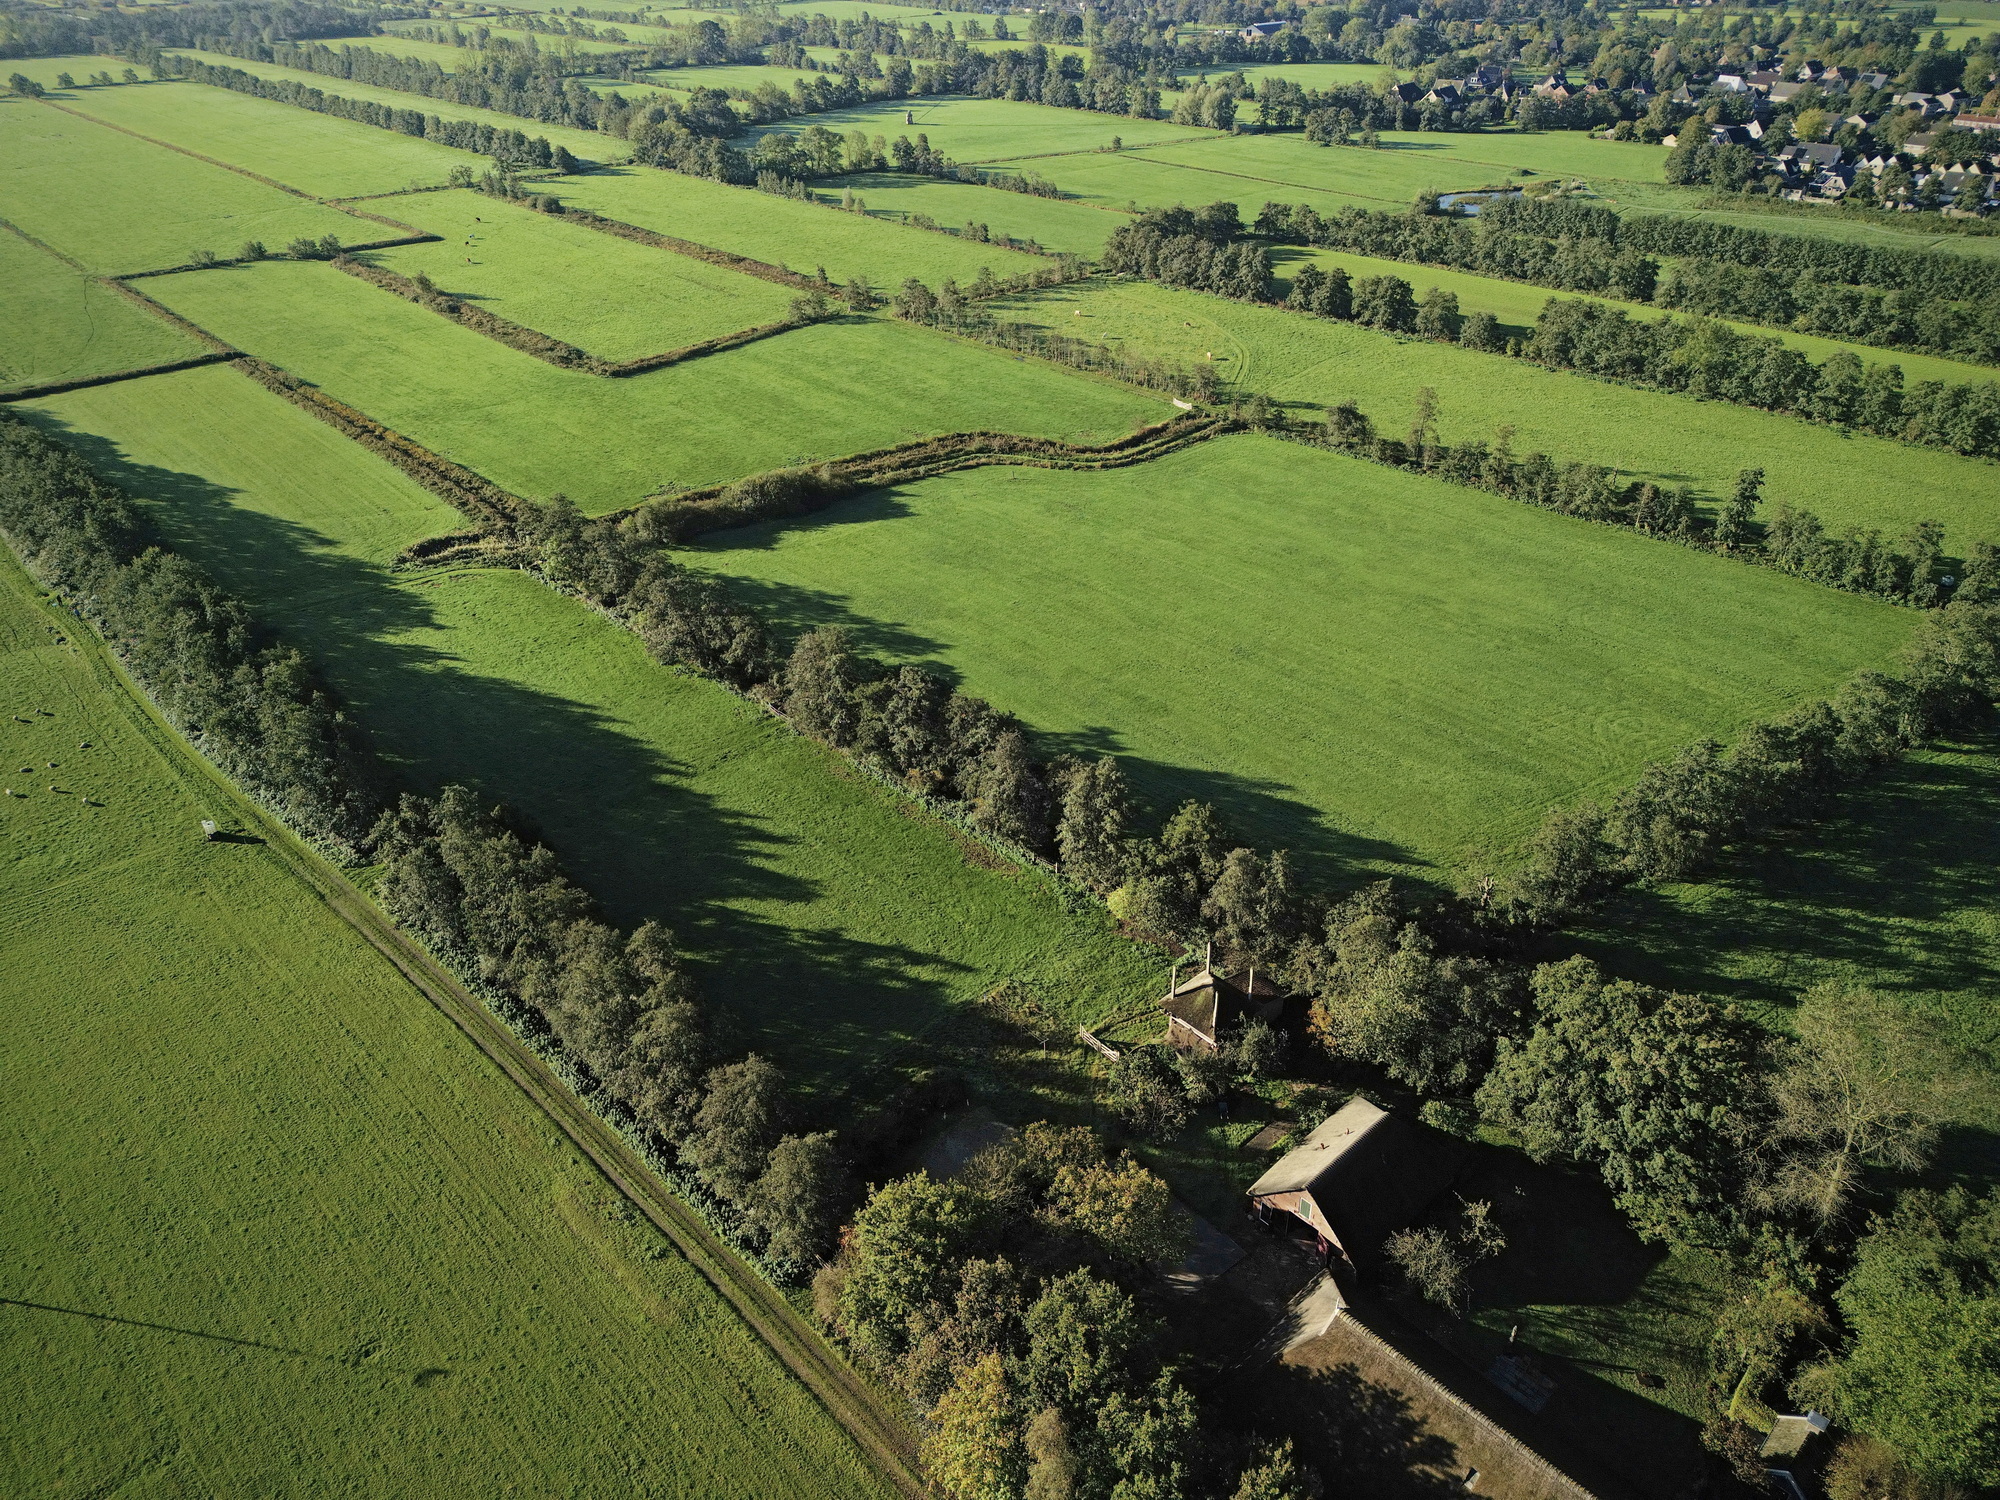 Dronefoto van het erfgoed Rikkerda met rechtsboven Lutjegast, met rechtsonder boerderij Rikkerda. Foto: ©Jur Kuipers.